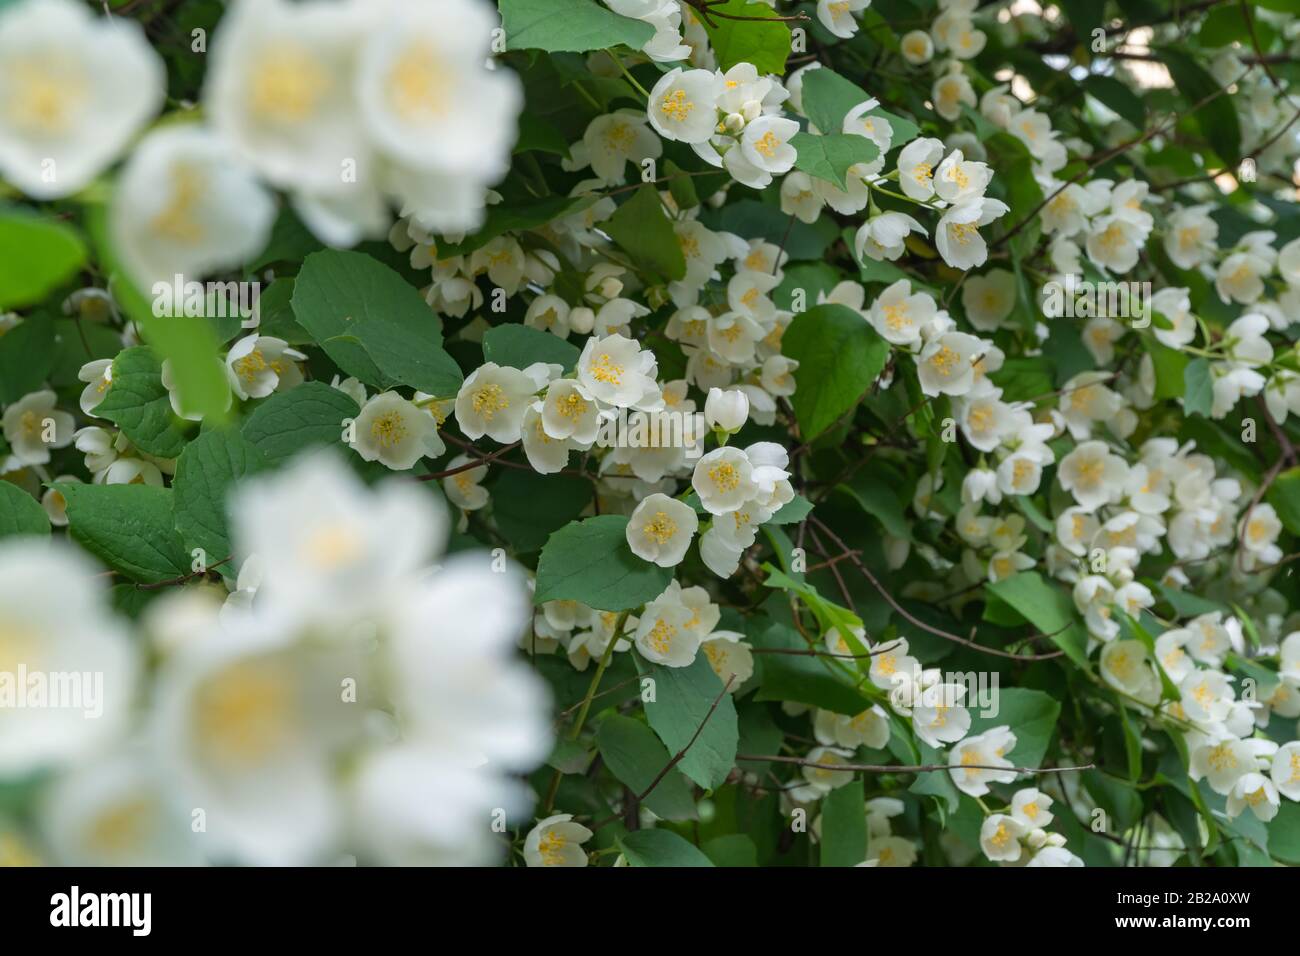 Simulazione Di Fiori D'Arancio. Bellissimo arbusto in fiore. Estate Foto Stock